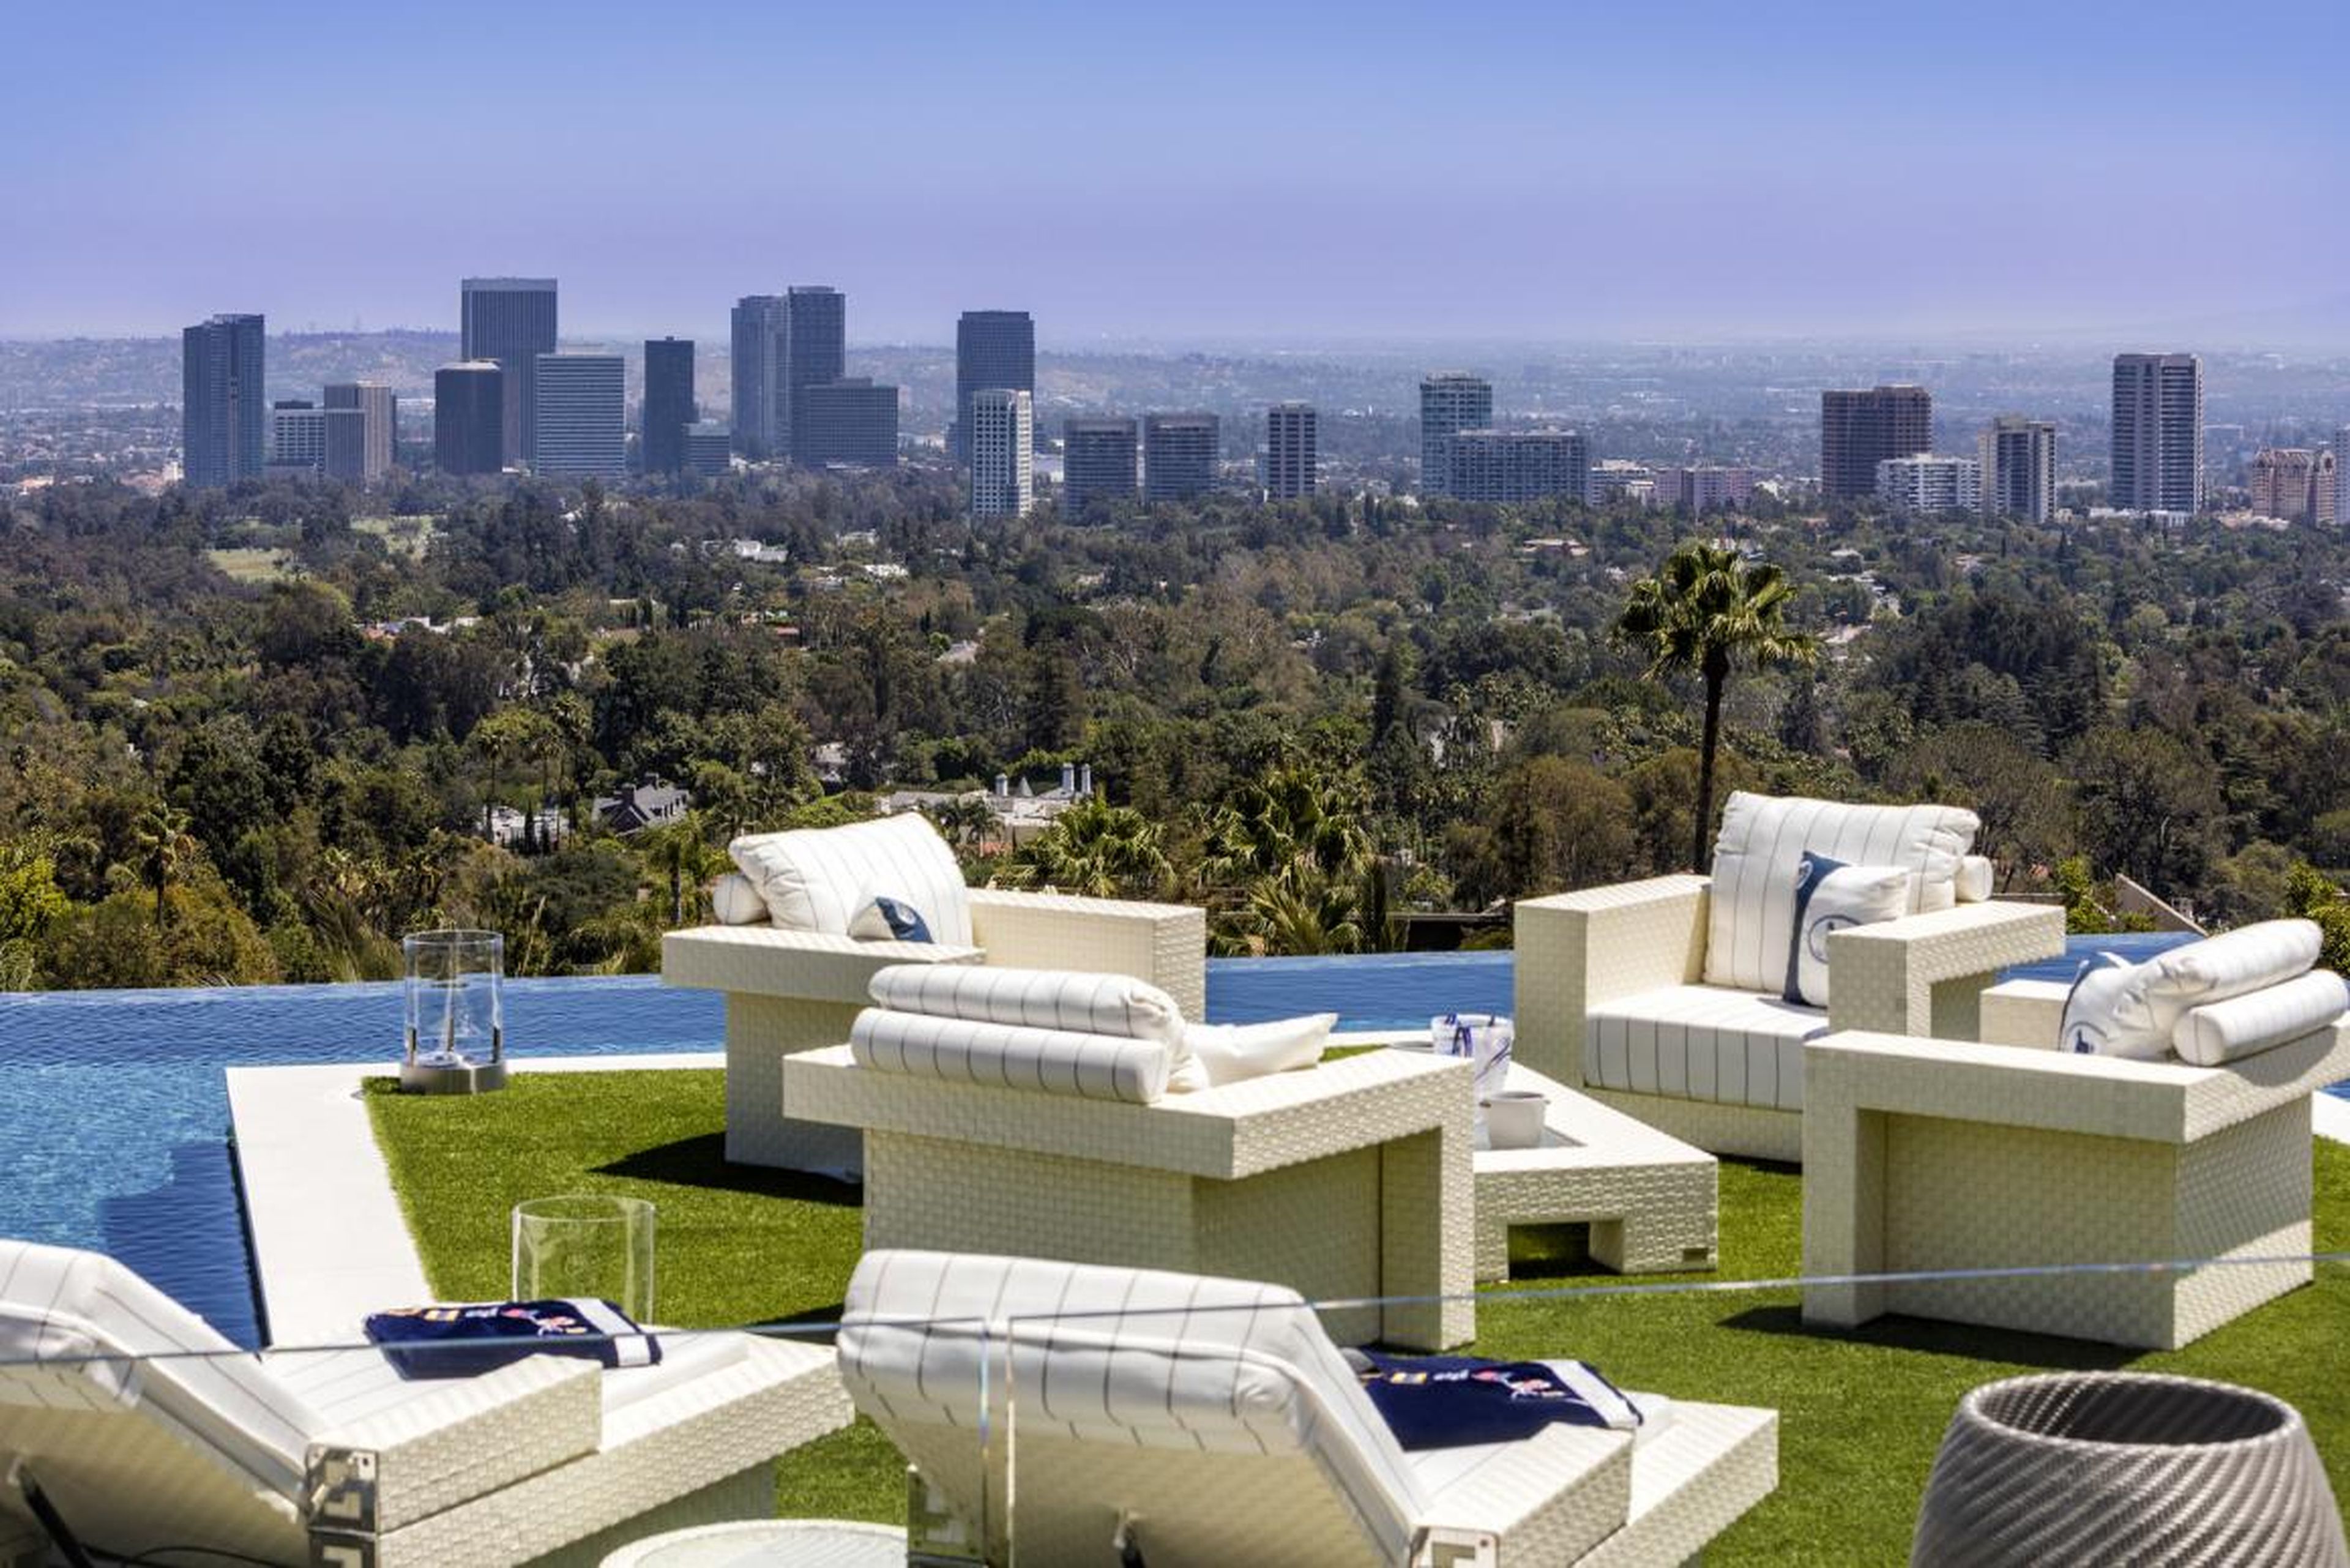 Situada en una colina, la casa ofrece una vista de 270 grados del área de Los Ángeles: una de sus características más preciadas.